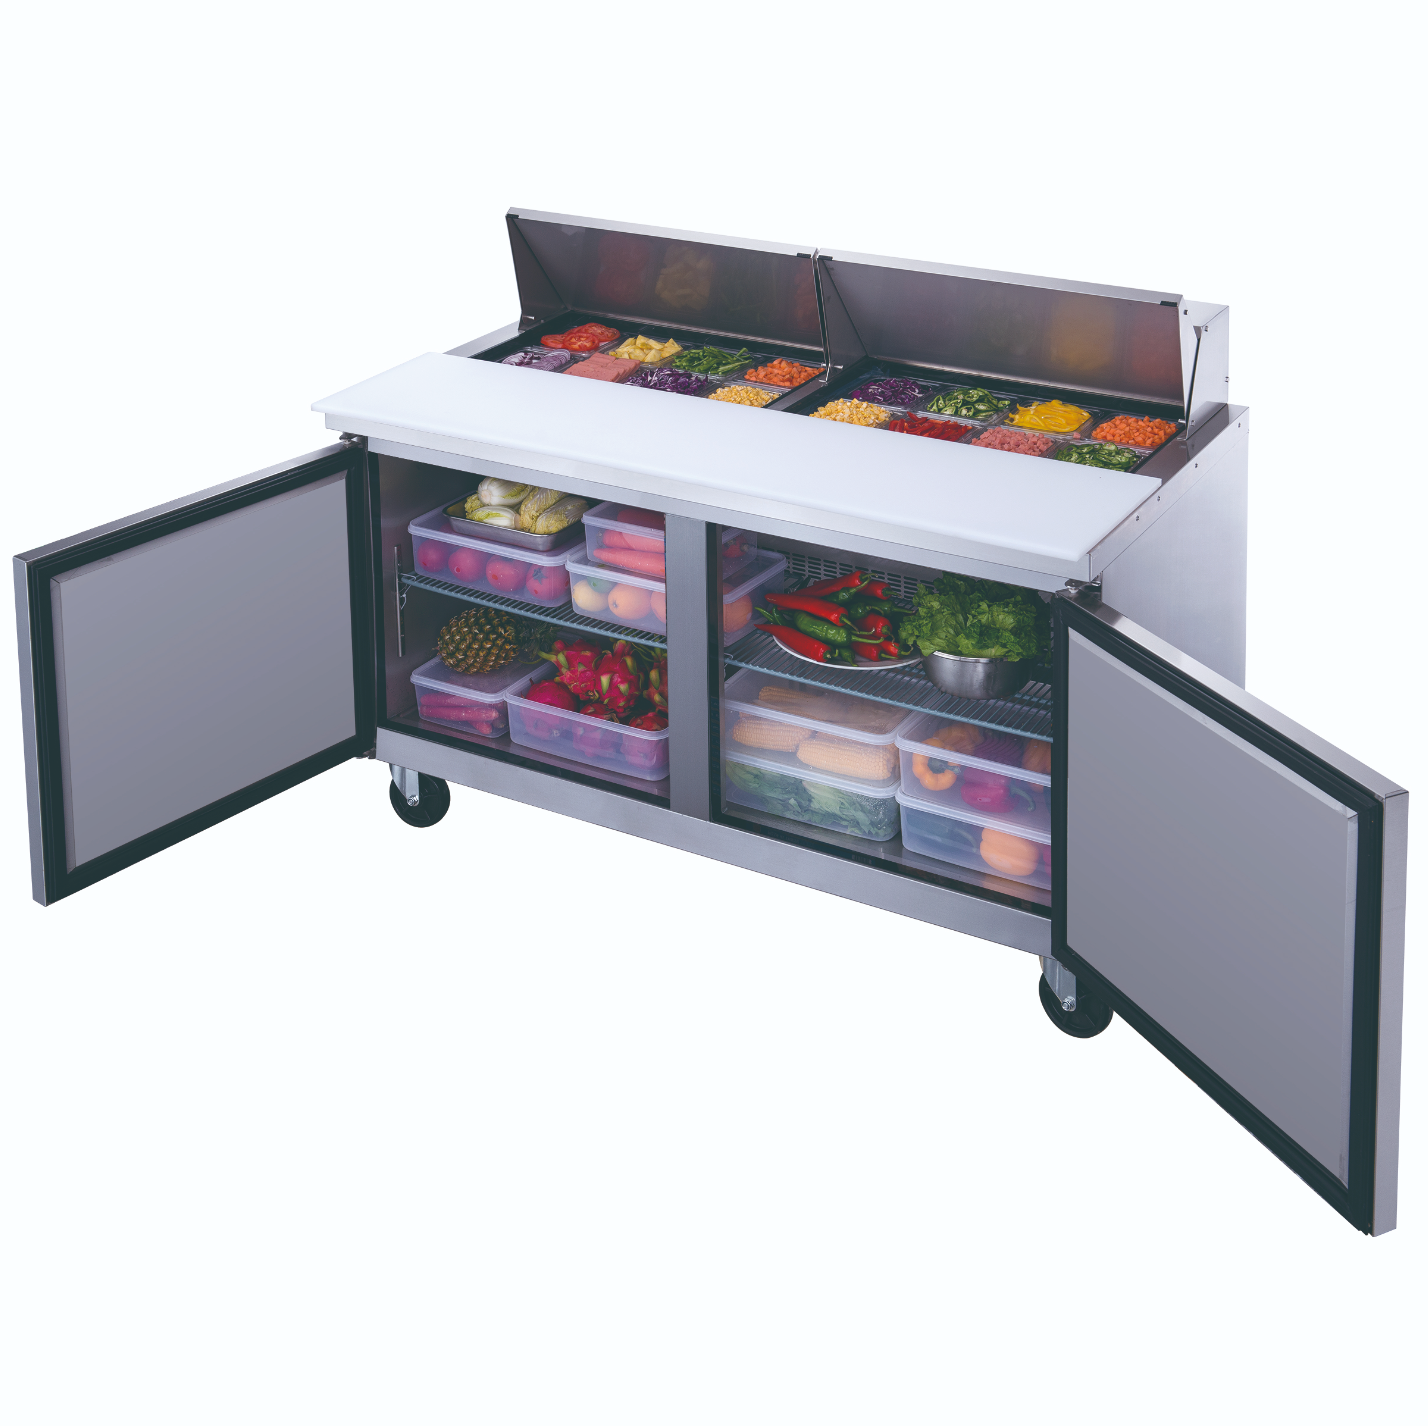 DSP60-16-S2 Refrigerador Comercial de Mesa de Preparación de Alimentos de 2 Puertas en Acero Inoxidable